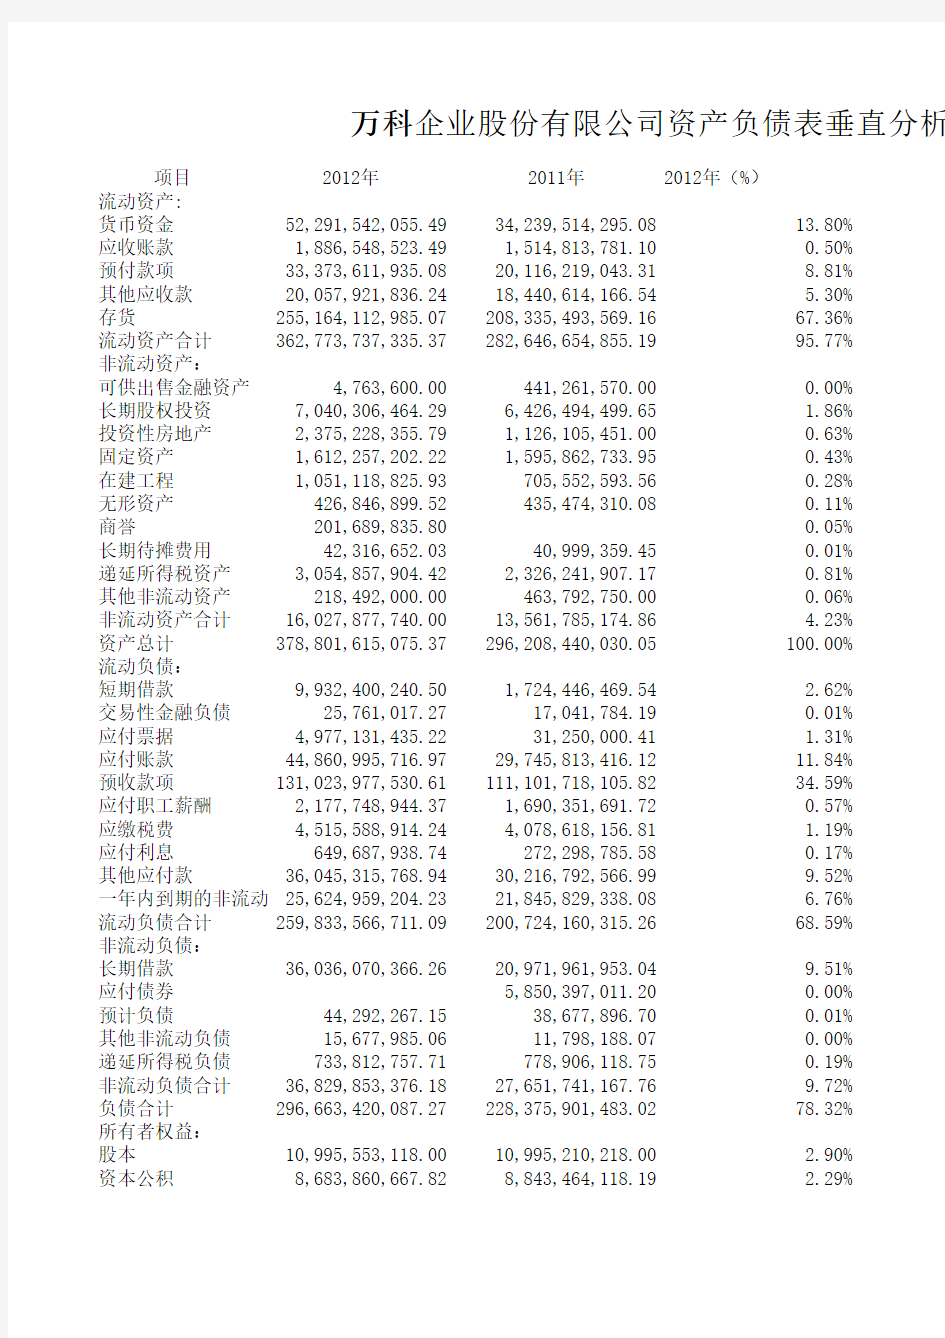 万科公司资产负债表垂直分析表2013